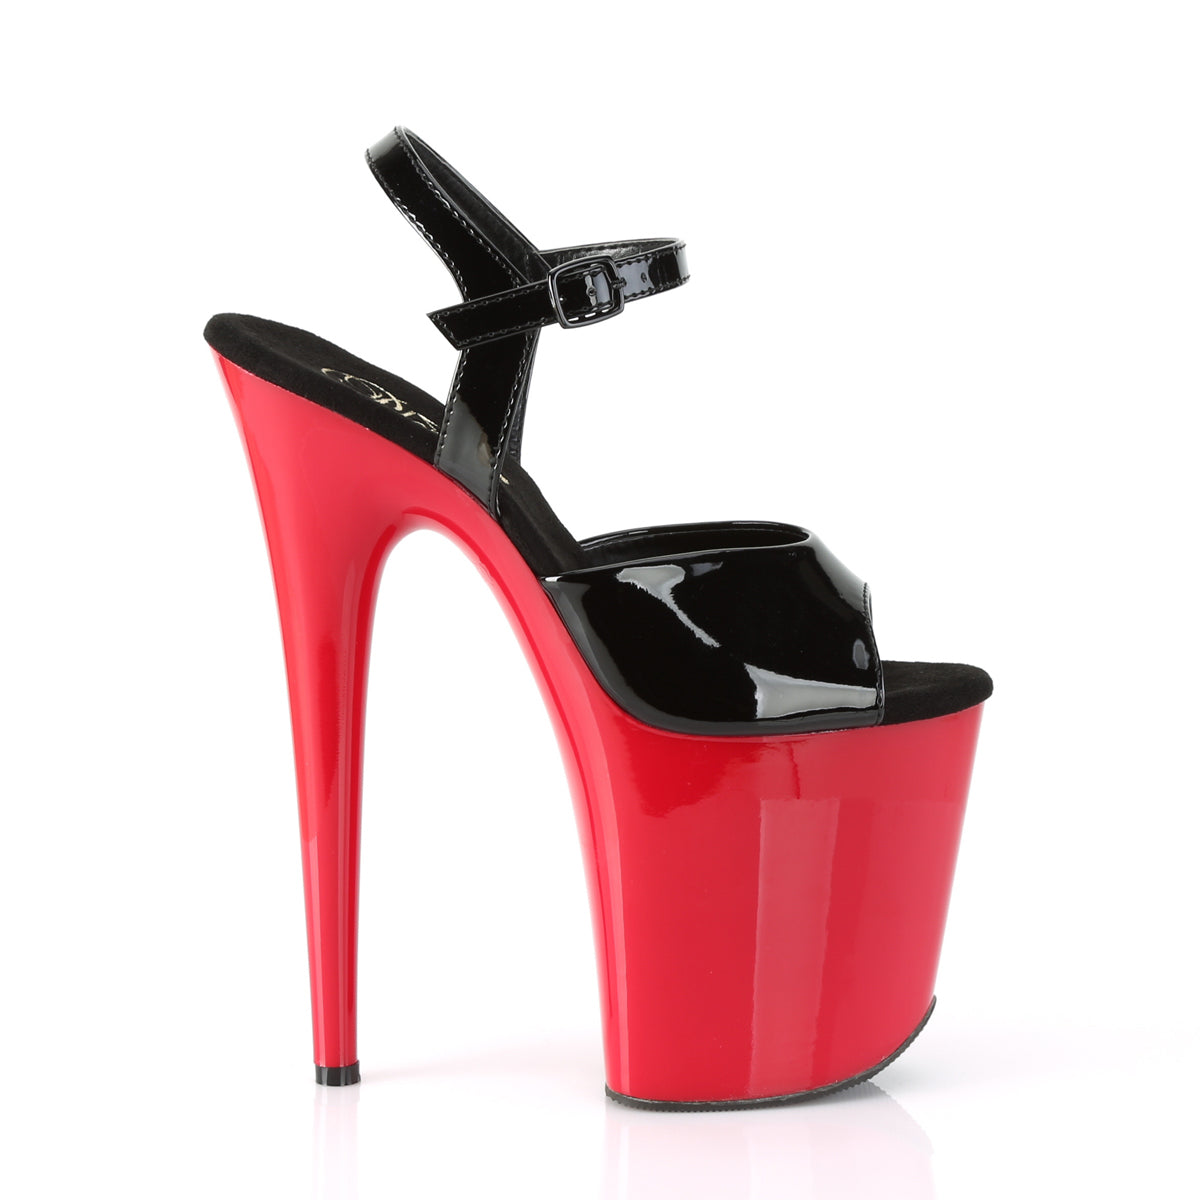 FLAMINGO-809 8" Heel Black Patent Red Pole Dancer Platform Shoes